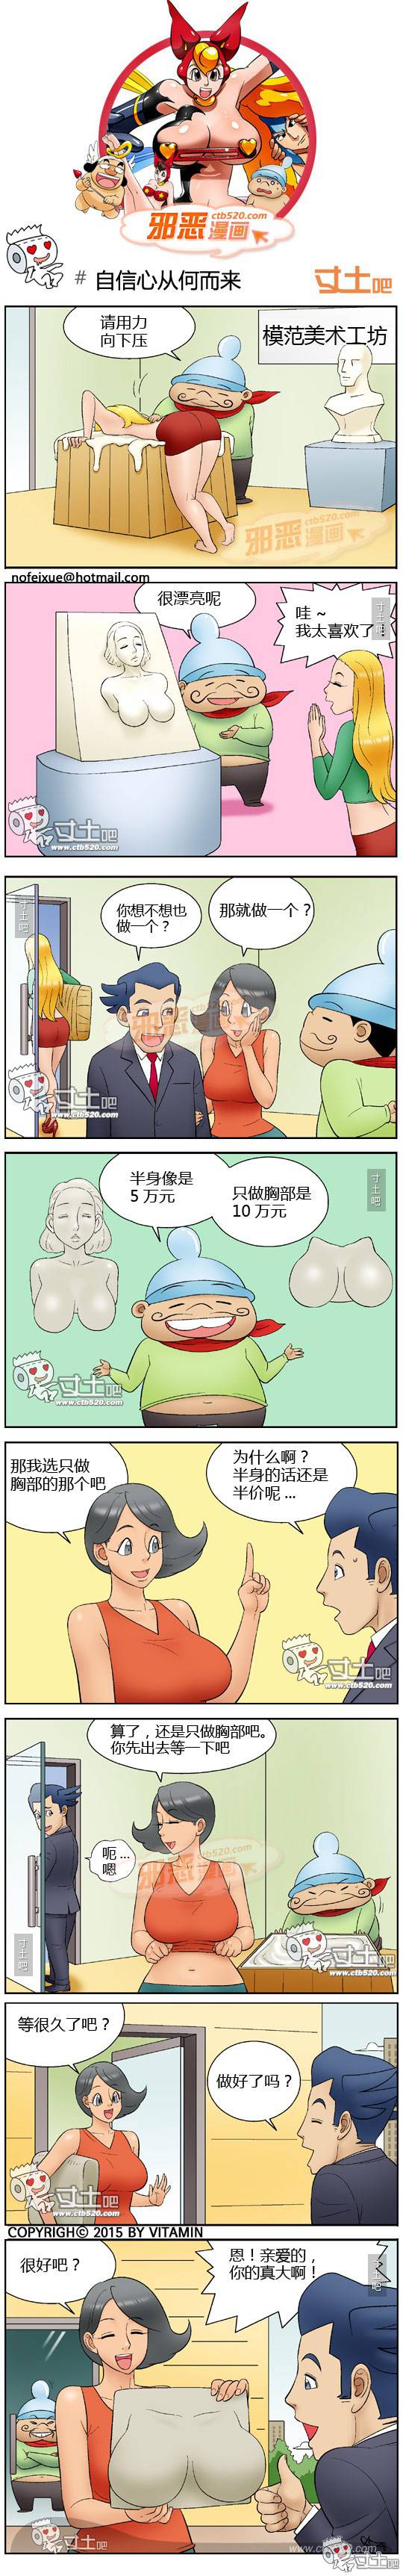 邪恶漫画爆笑囧图第306刊：欲望产生变化